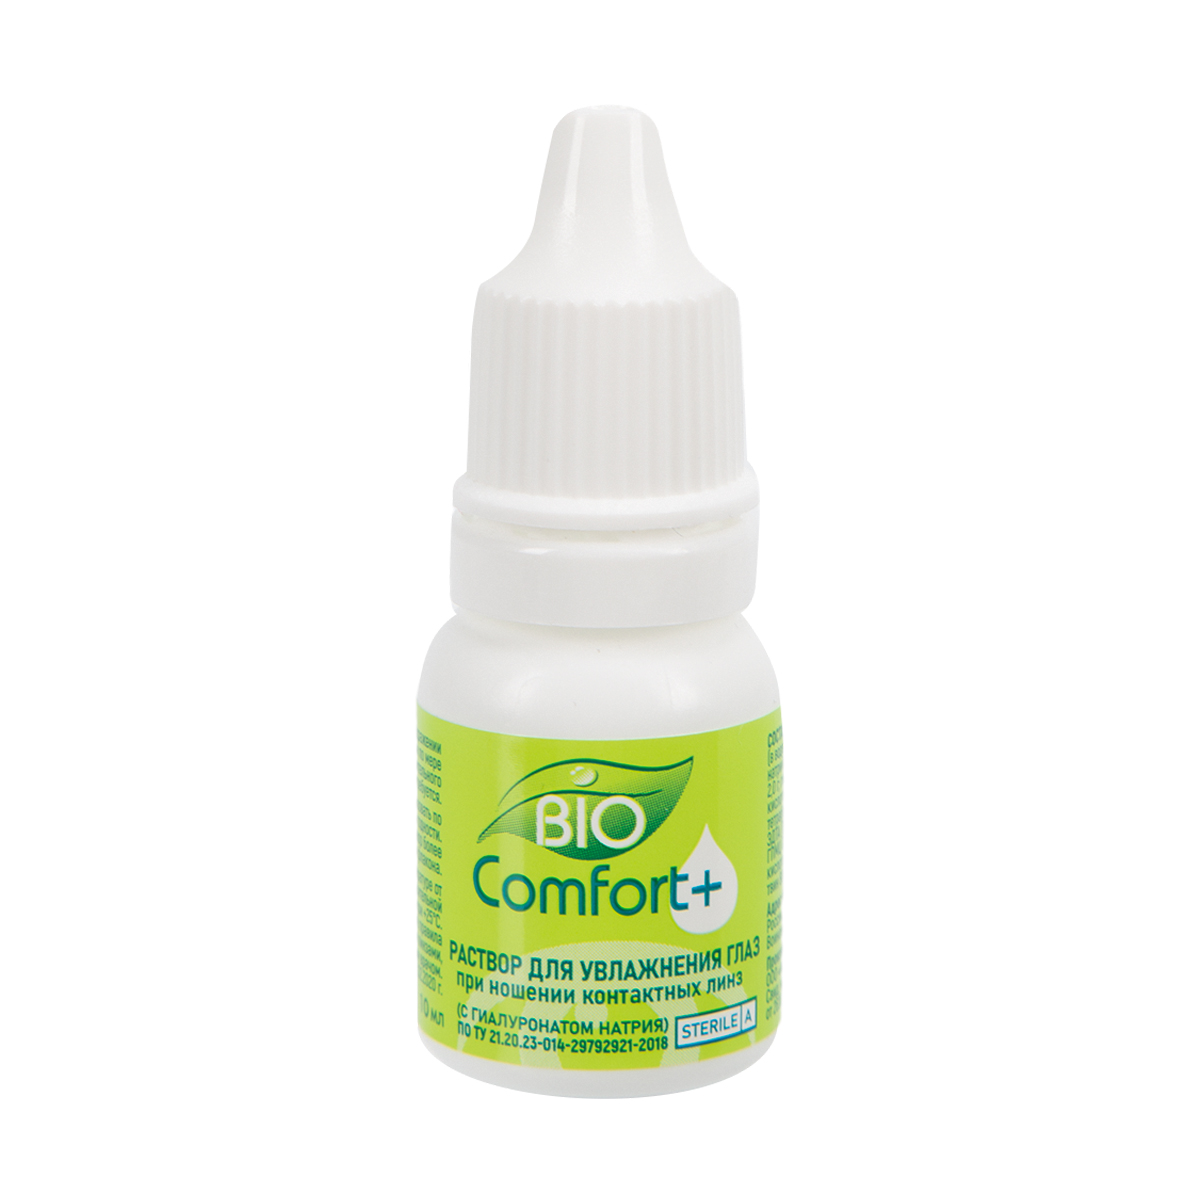 Раствор для увлажнения глаз Bio Comfort + 1Айкрафт» (10 мл), Изделия медицинского назначения, Оптика